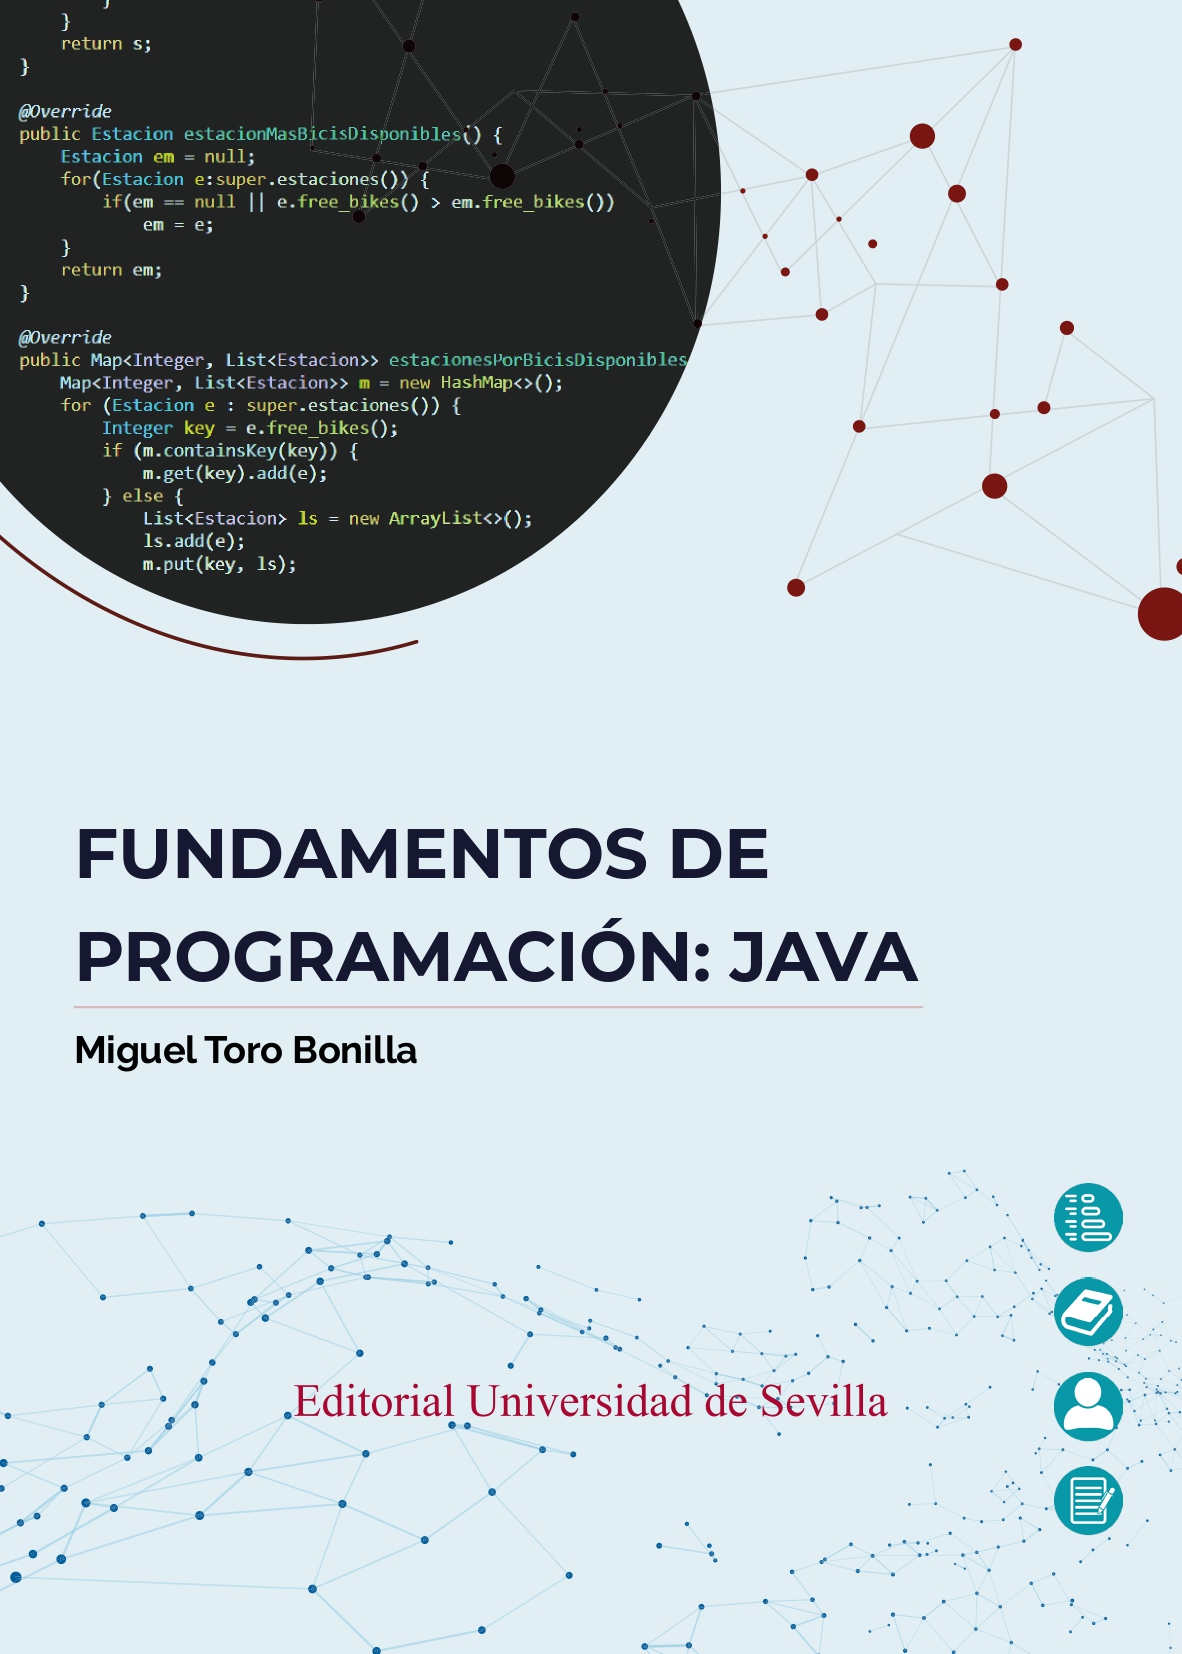 Imagen de portada del libro Fundamentos de programación: JAVA